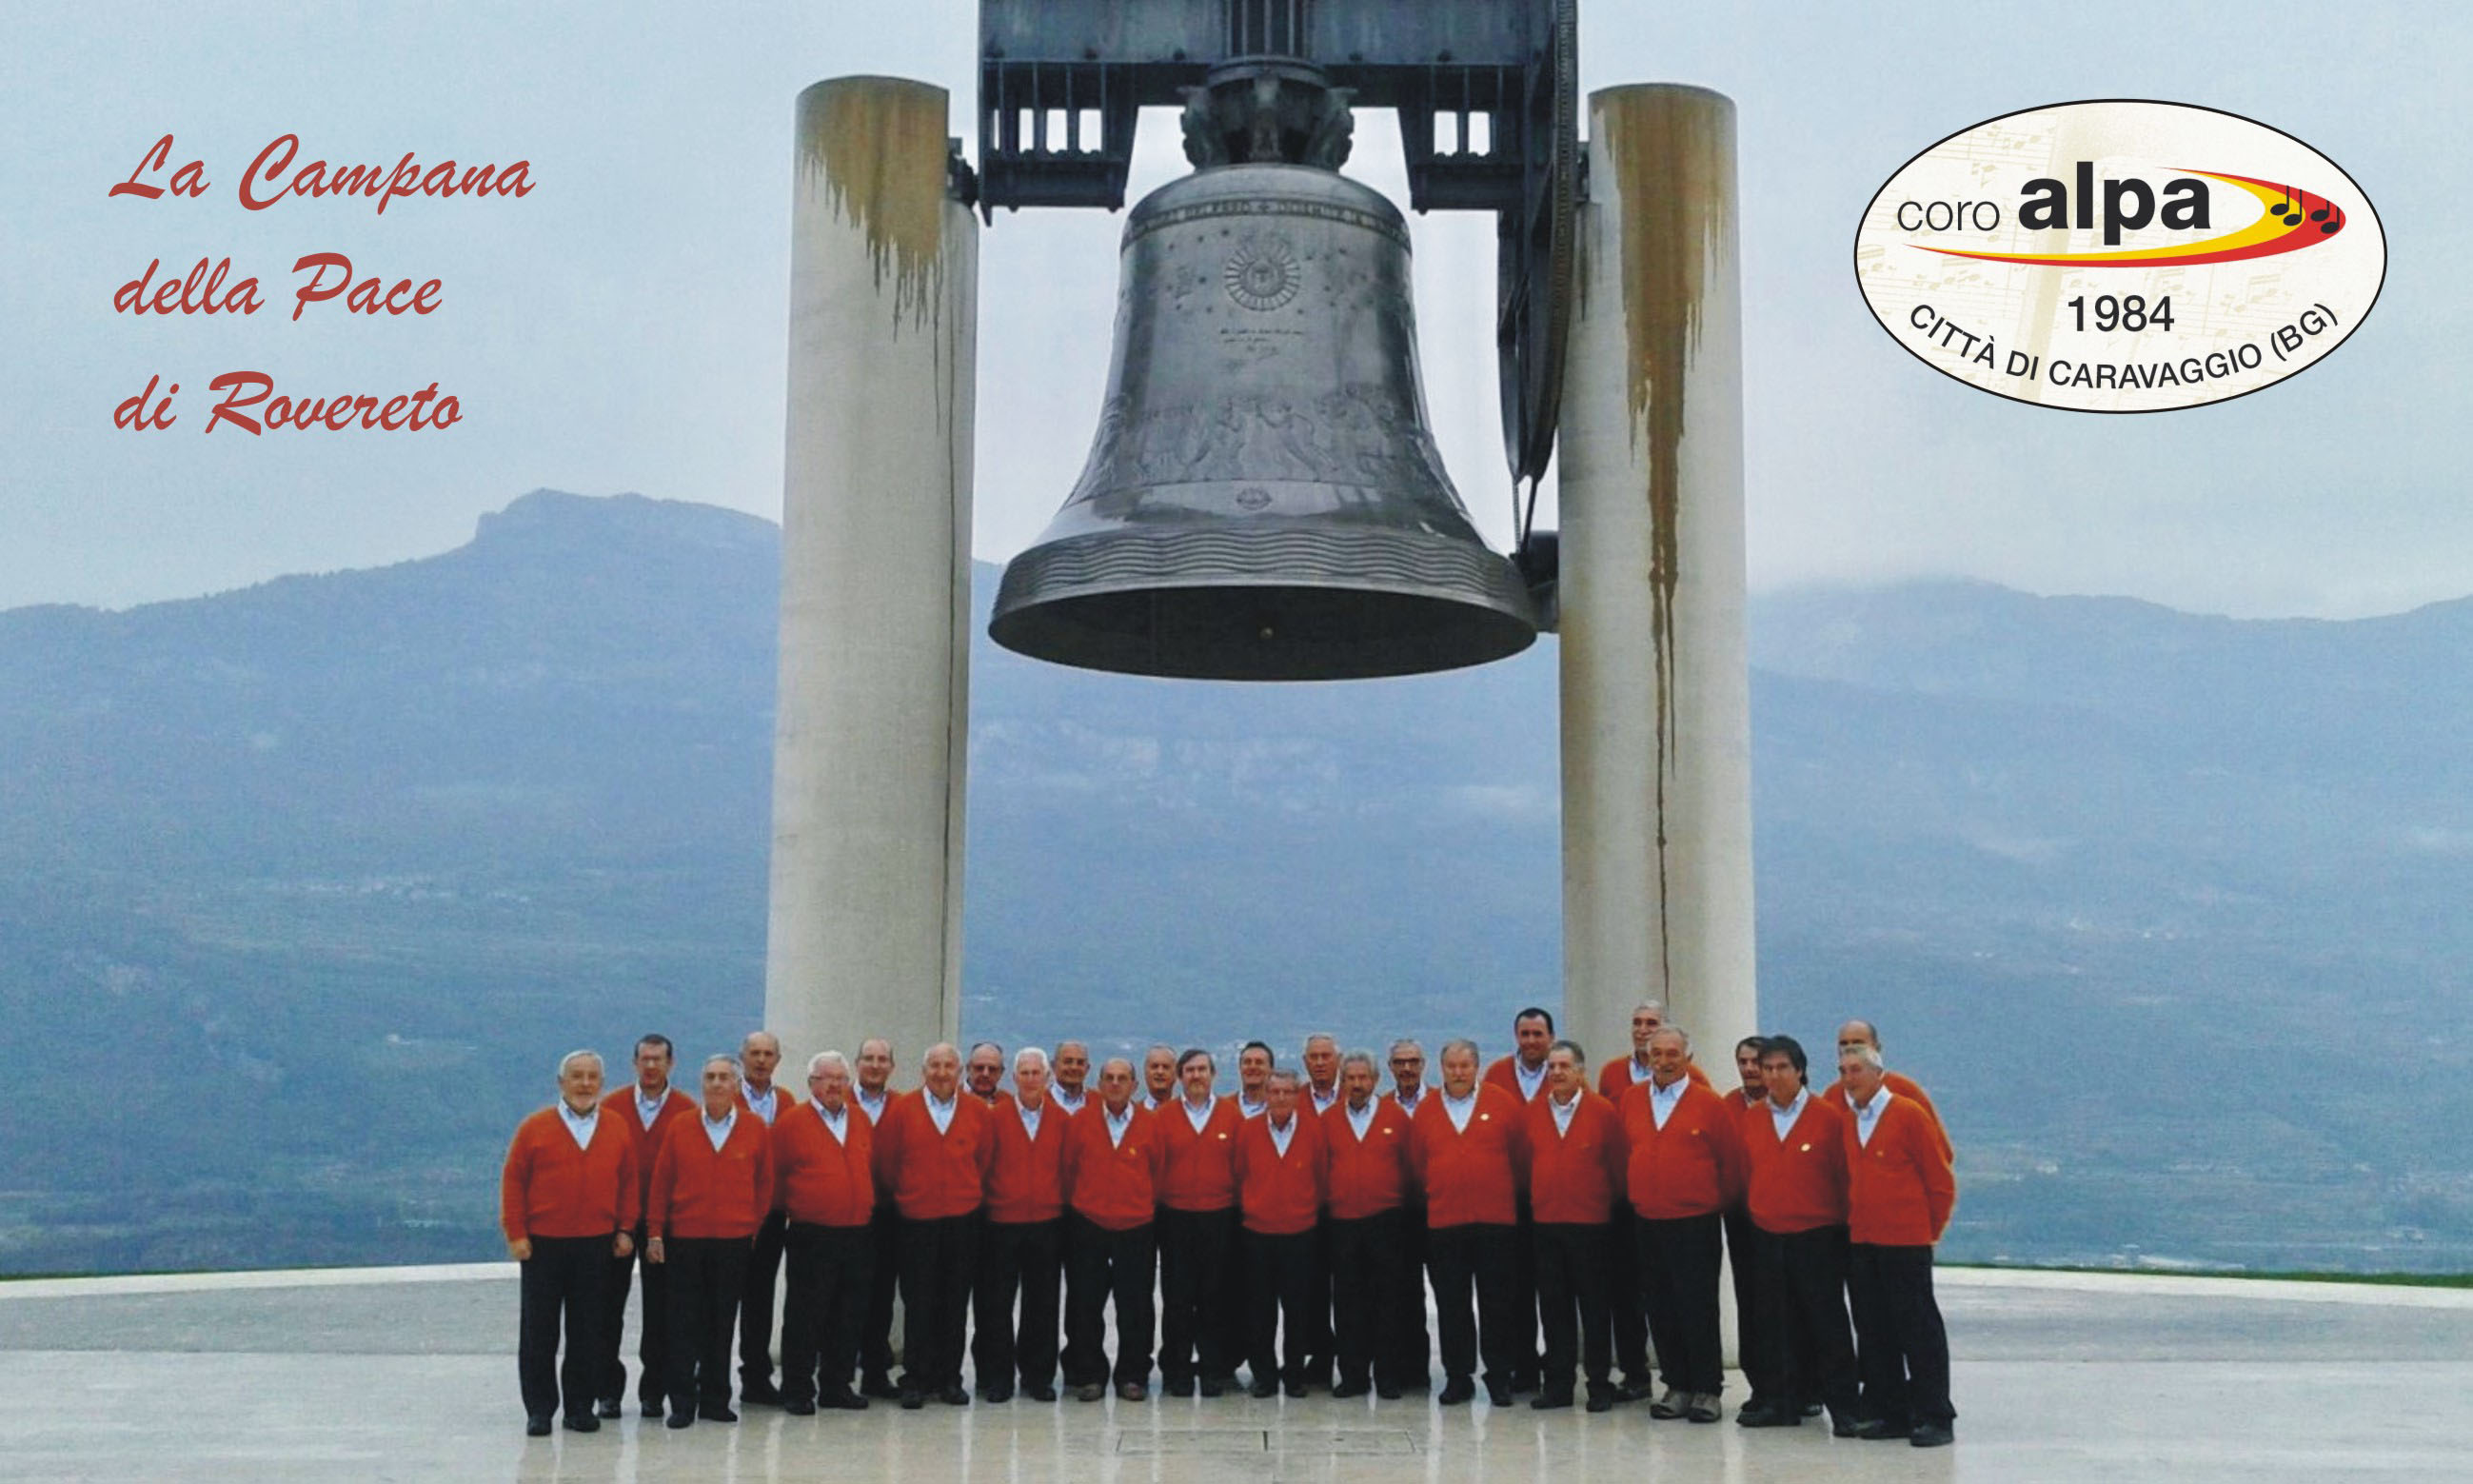 Il coro ALPA in posa davanti alla Campana della Pace di Rovereto (TN)